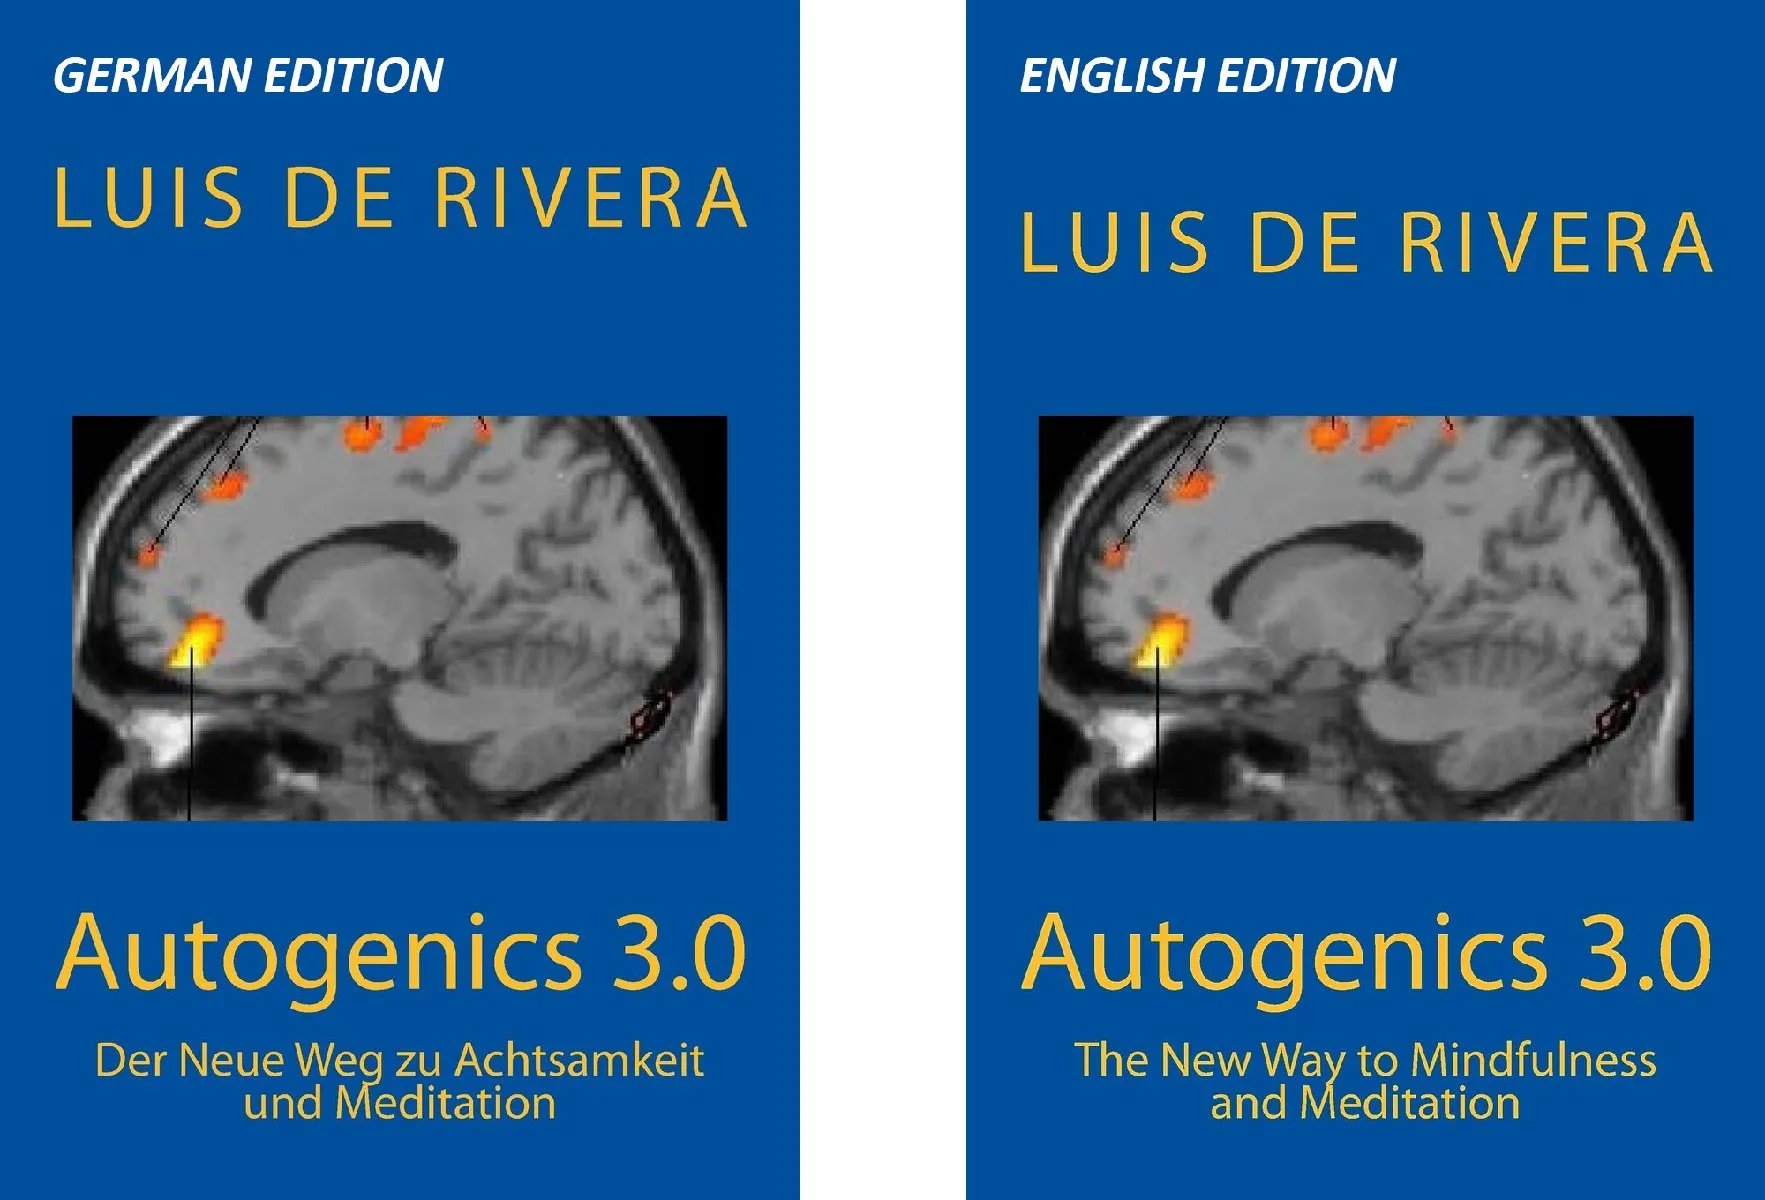 Autogenics 3.0 by Dr Luis de Rivera